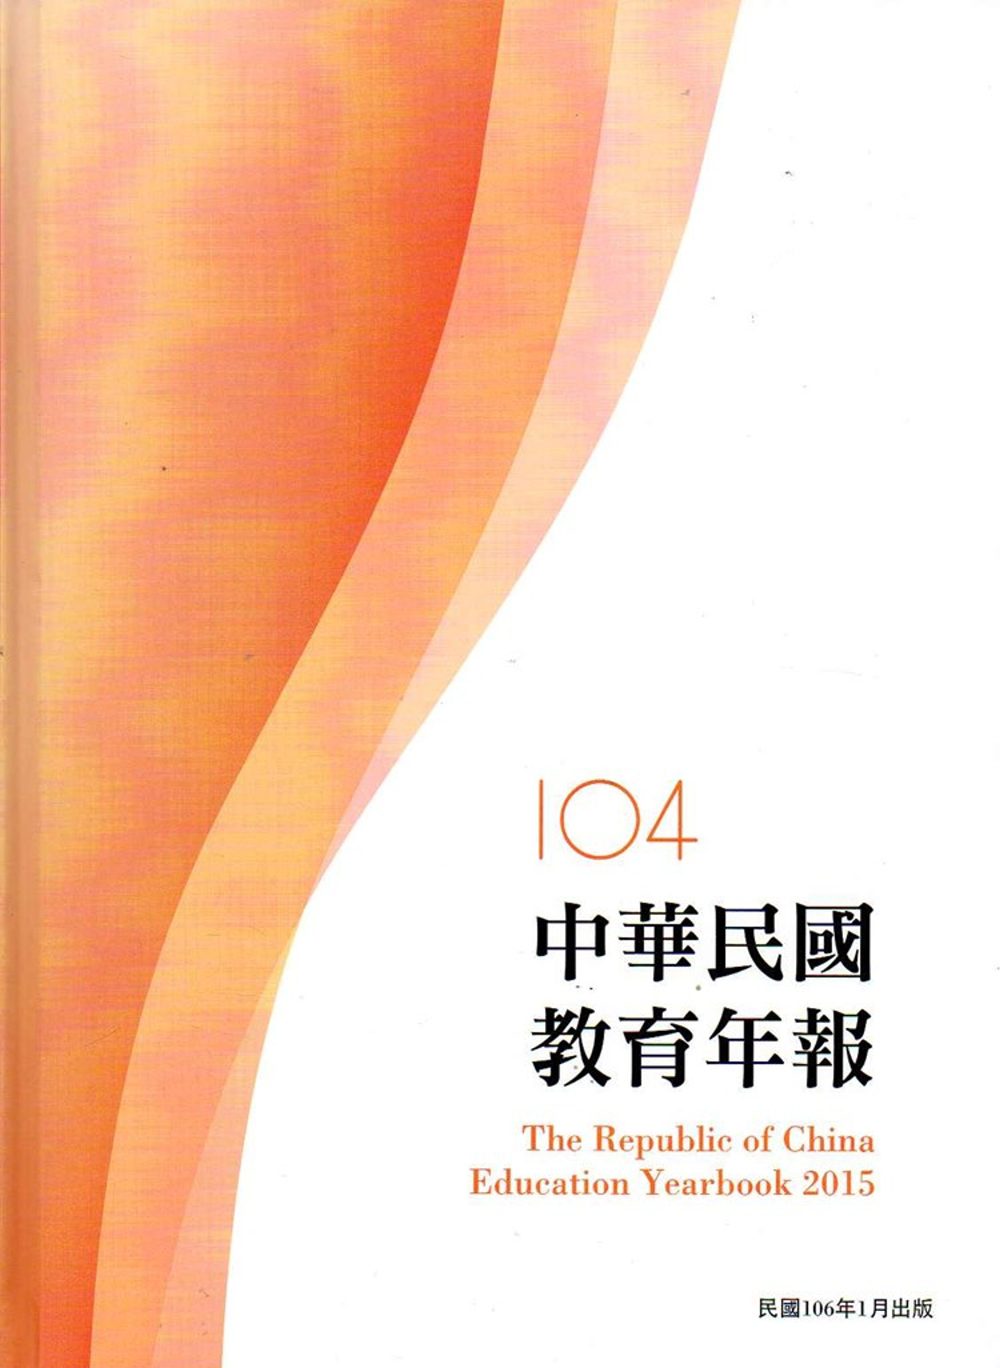 中華民國教育年報104年(附光碟)